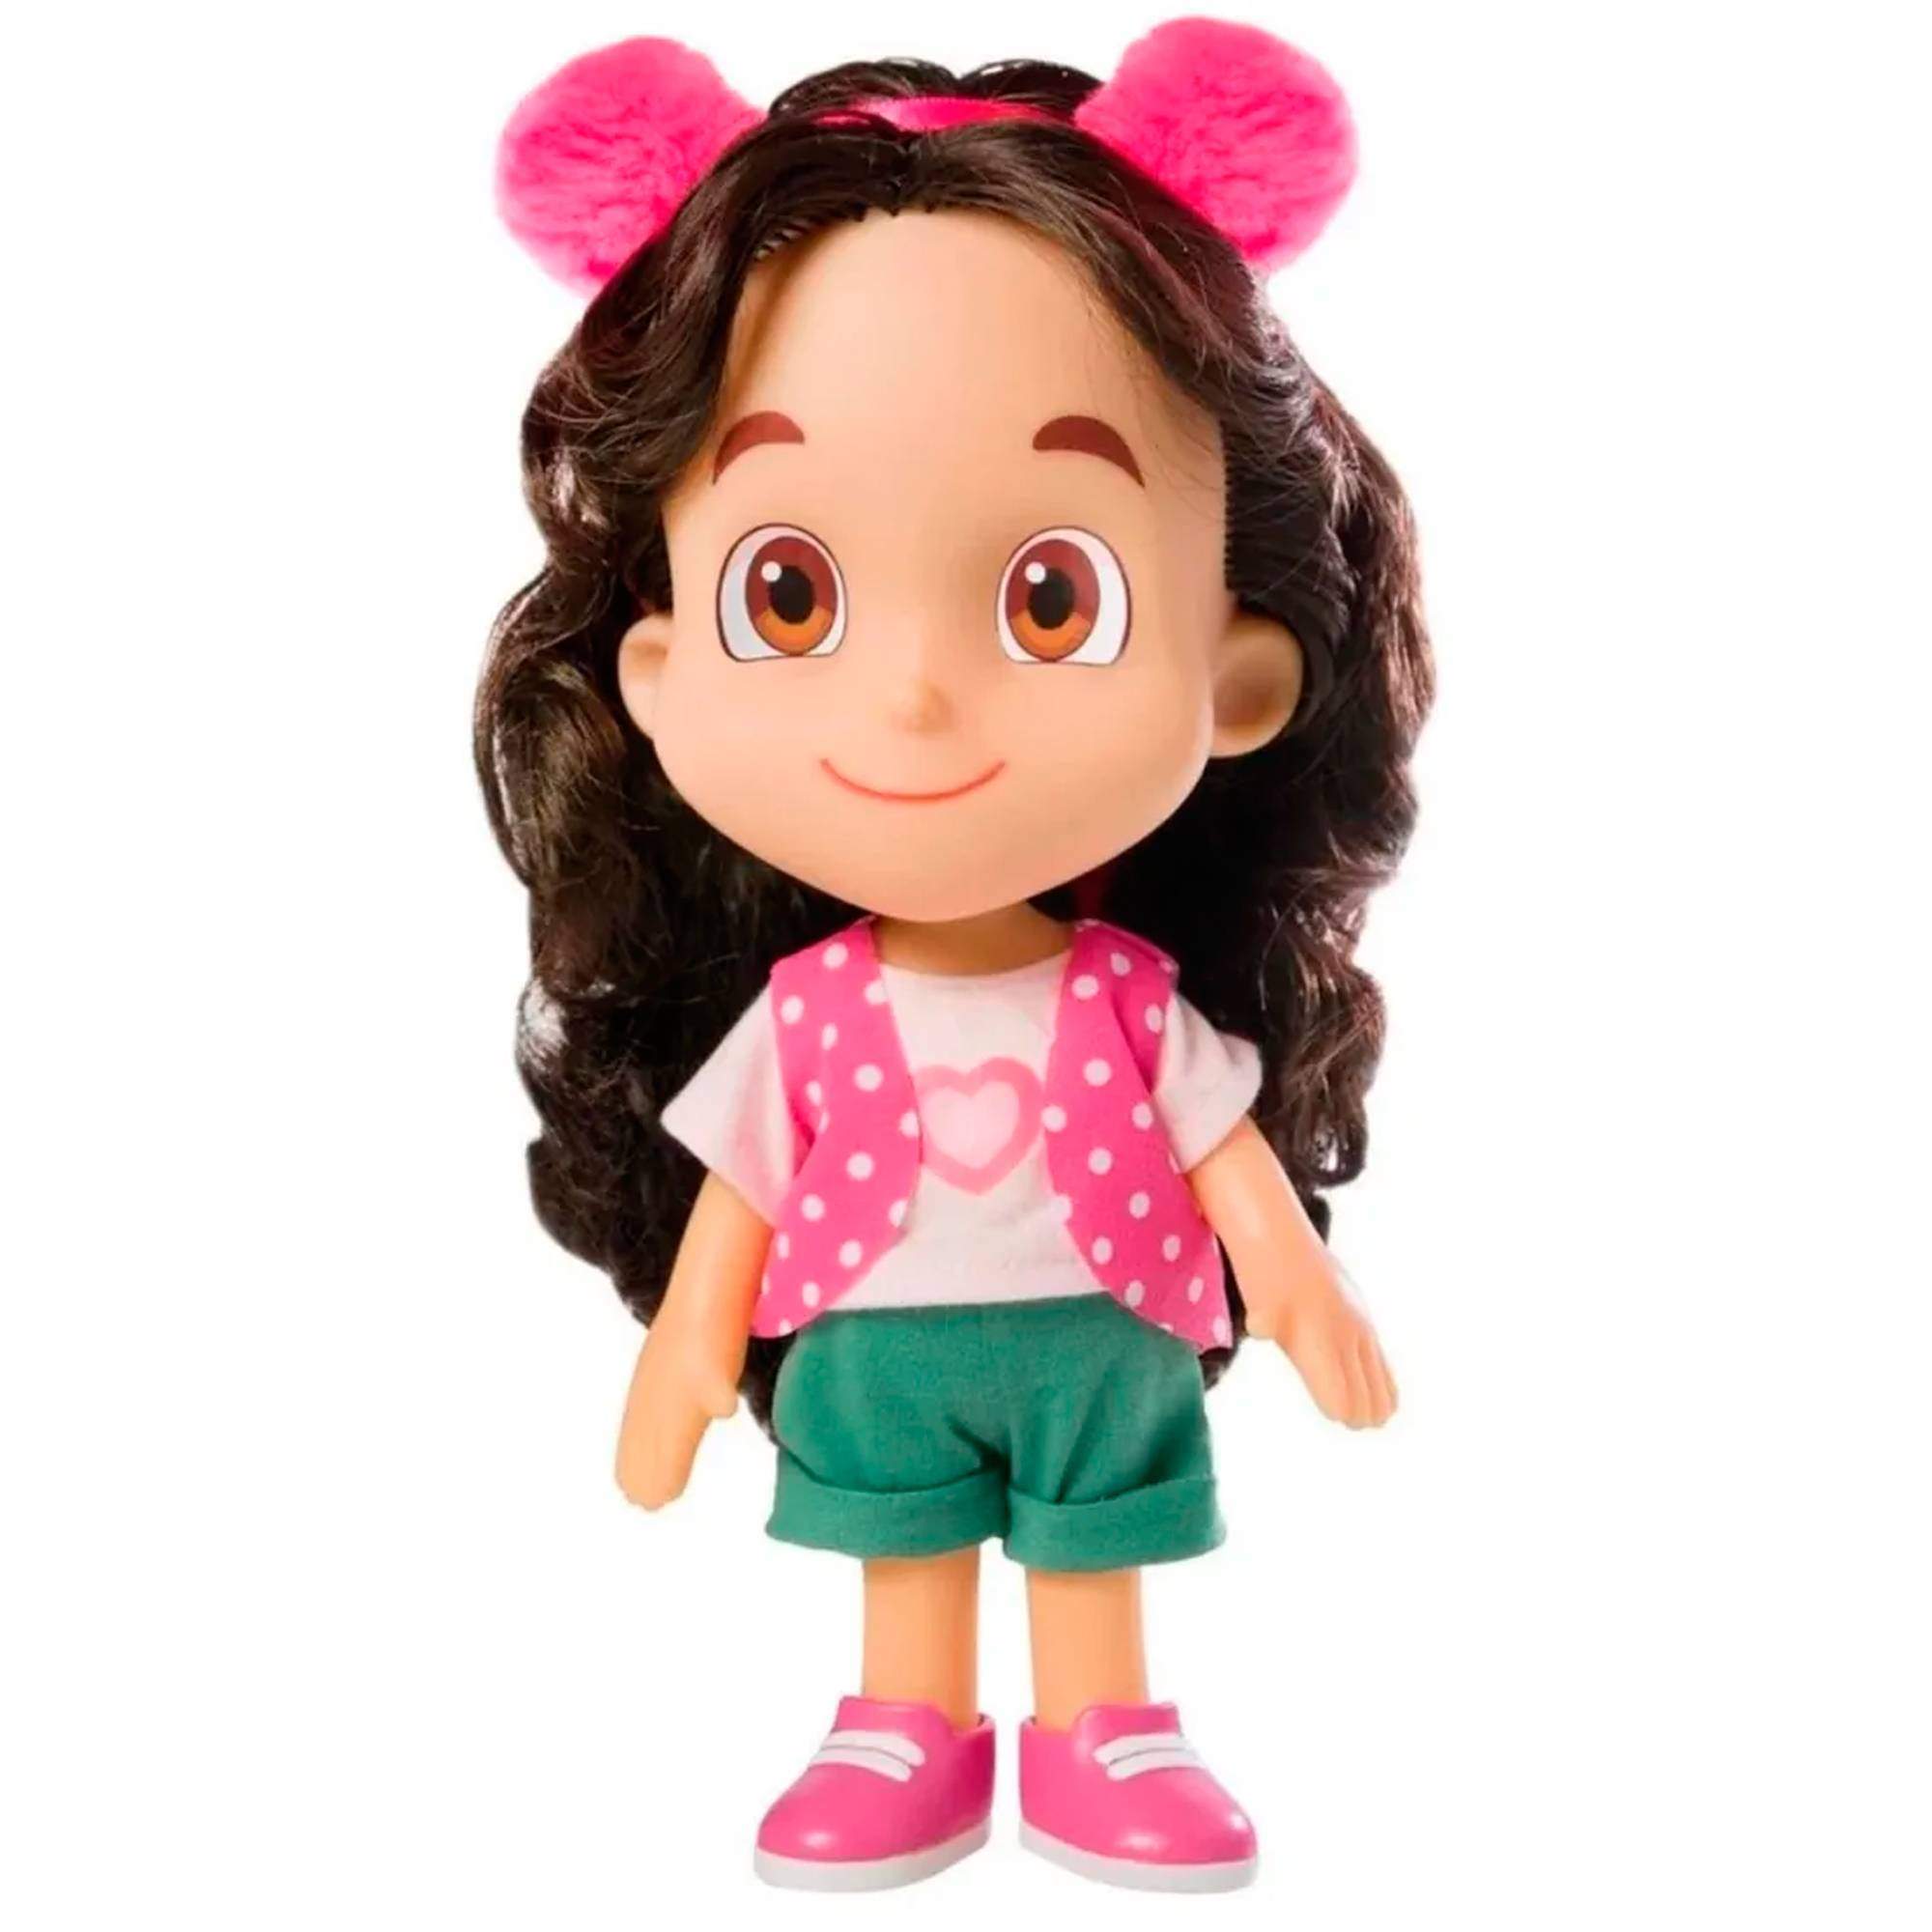 Boneca Articulada Menina Gabby Gabby - Personagem Desenho Infantil